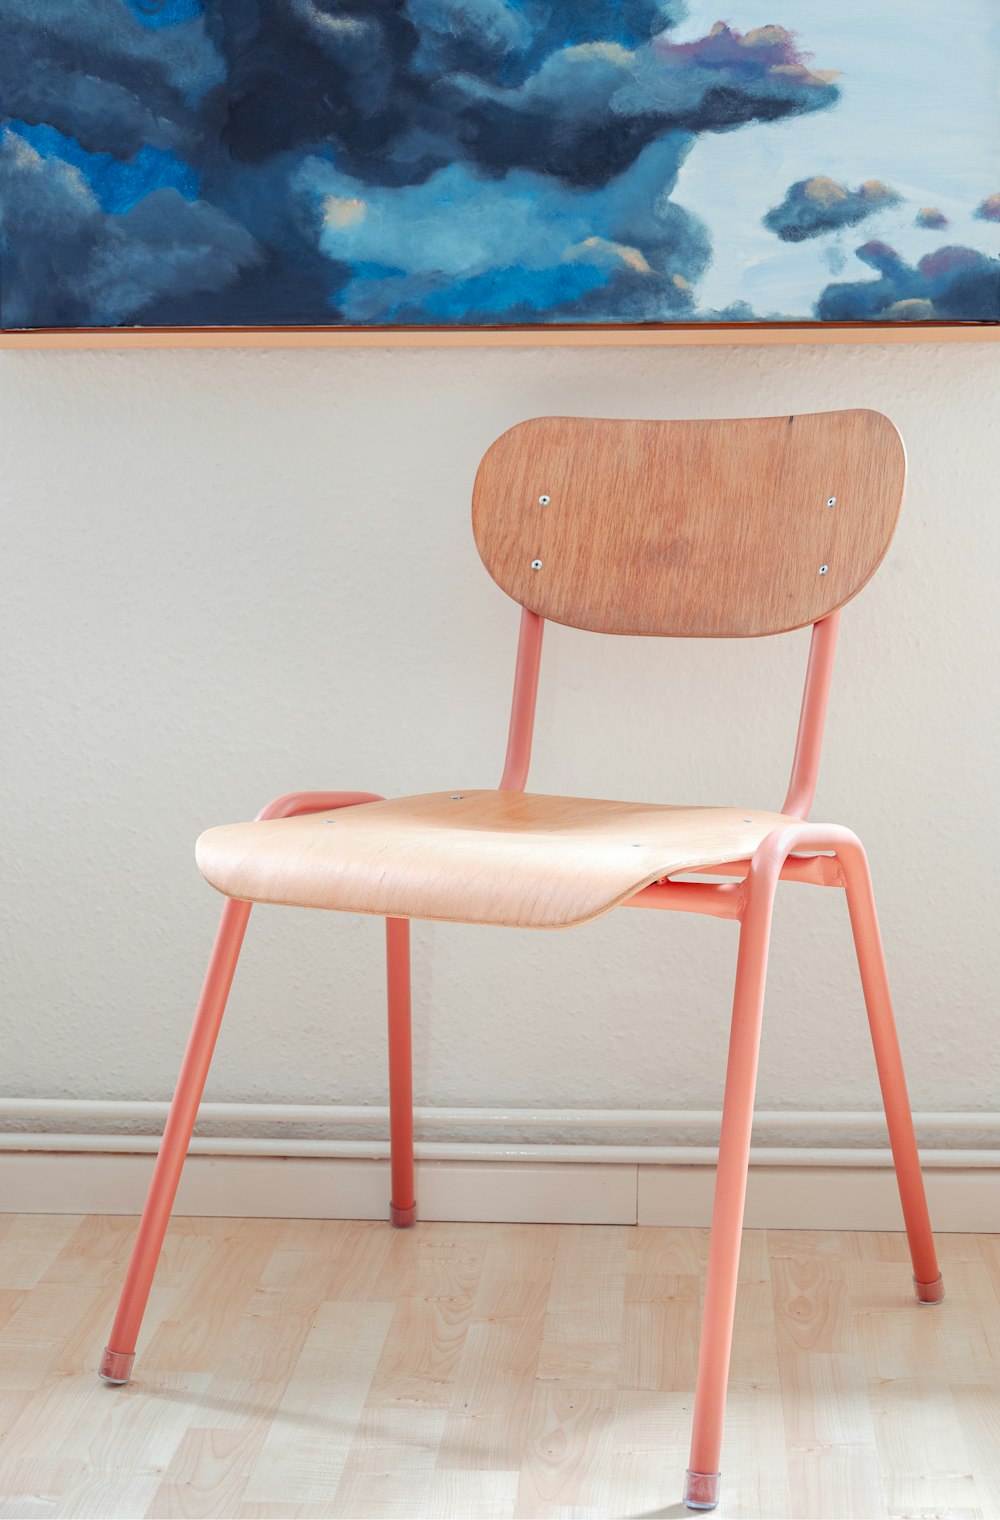 絵画の前に座っている木製の椅子